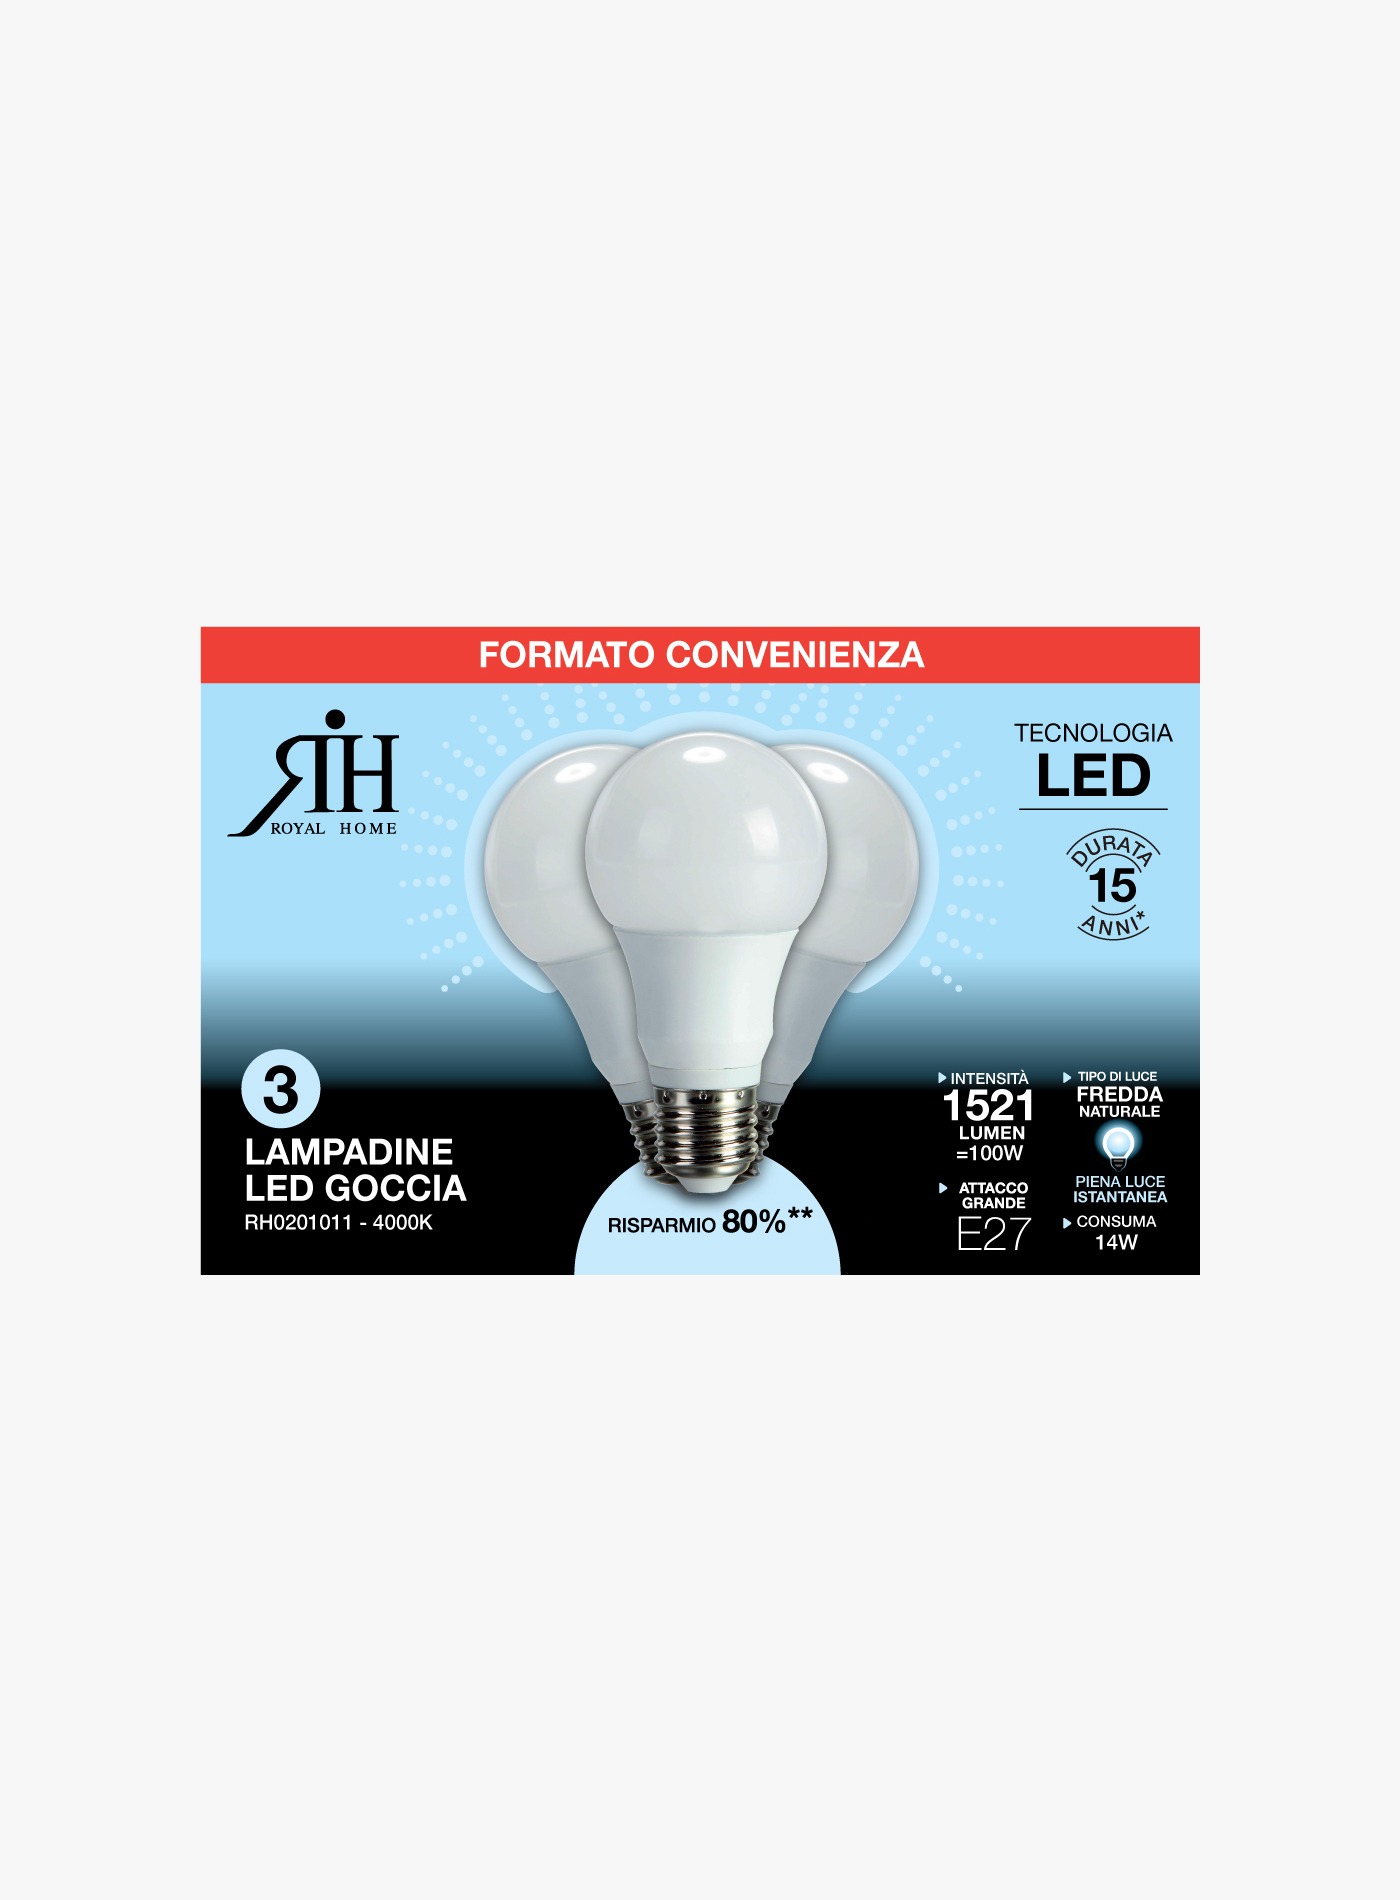 Three 100 watt led bulbs drop cold F